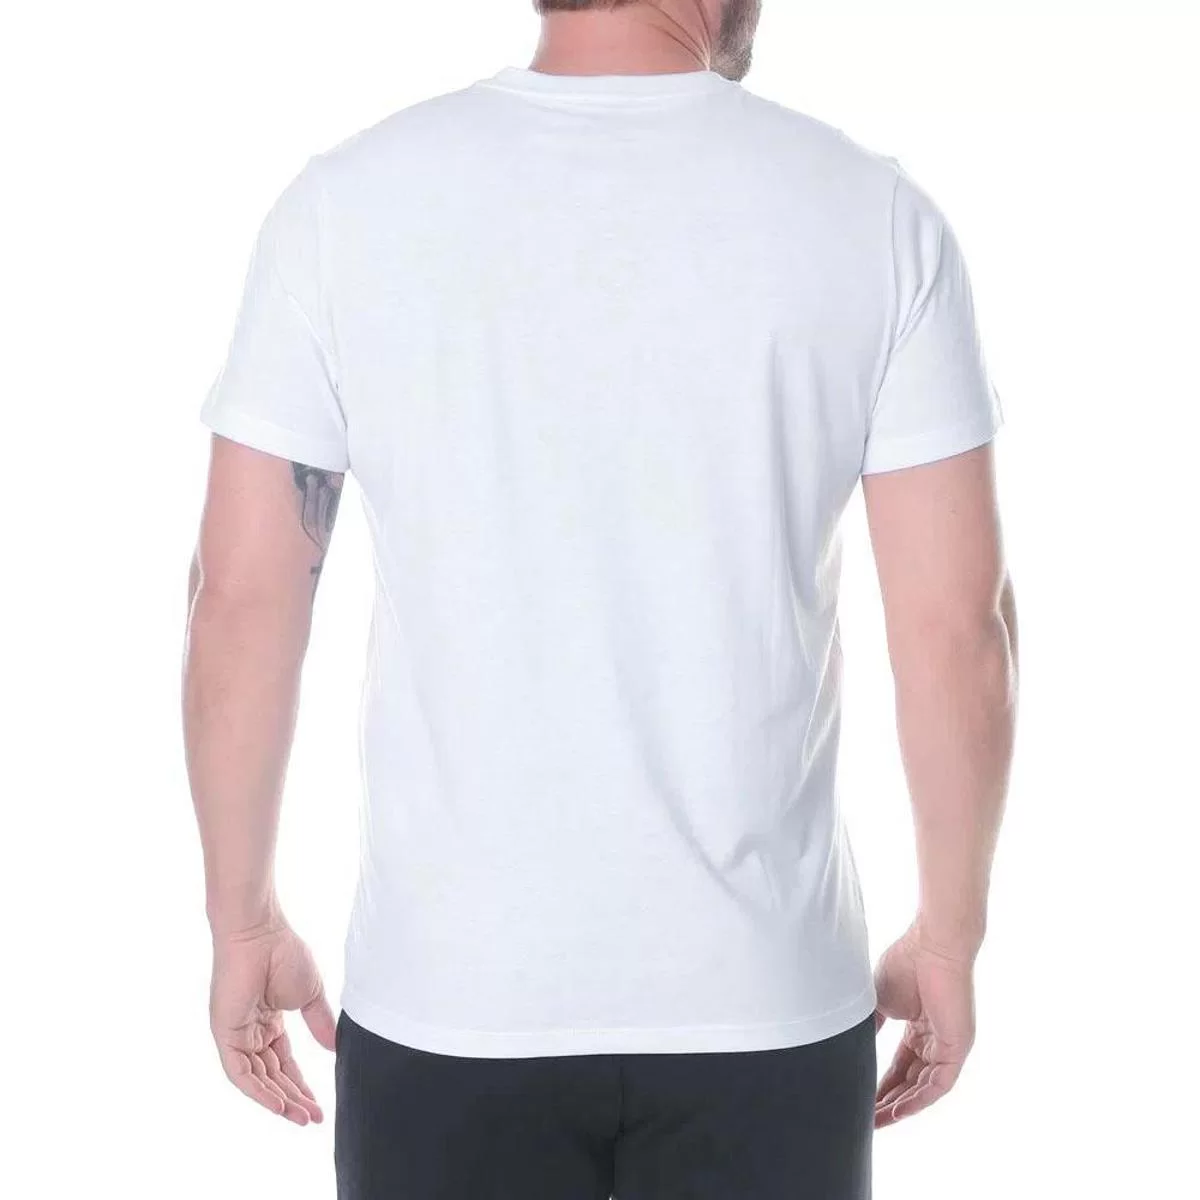 Camiseta Columbia Brushed Brand Masc Branco